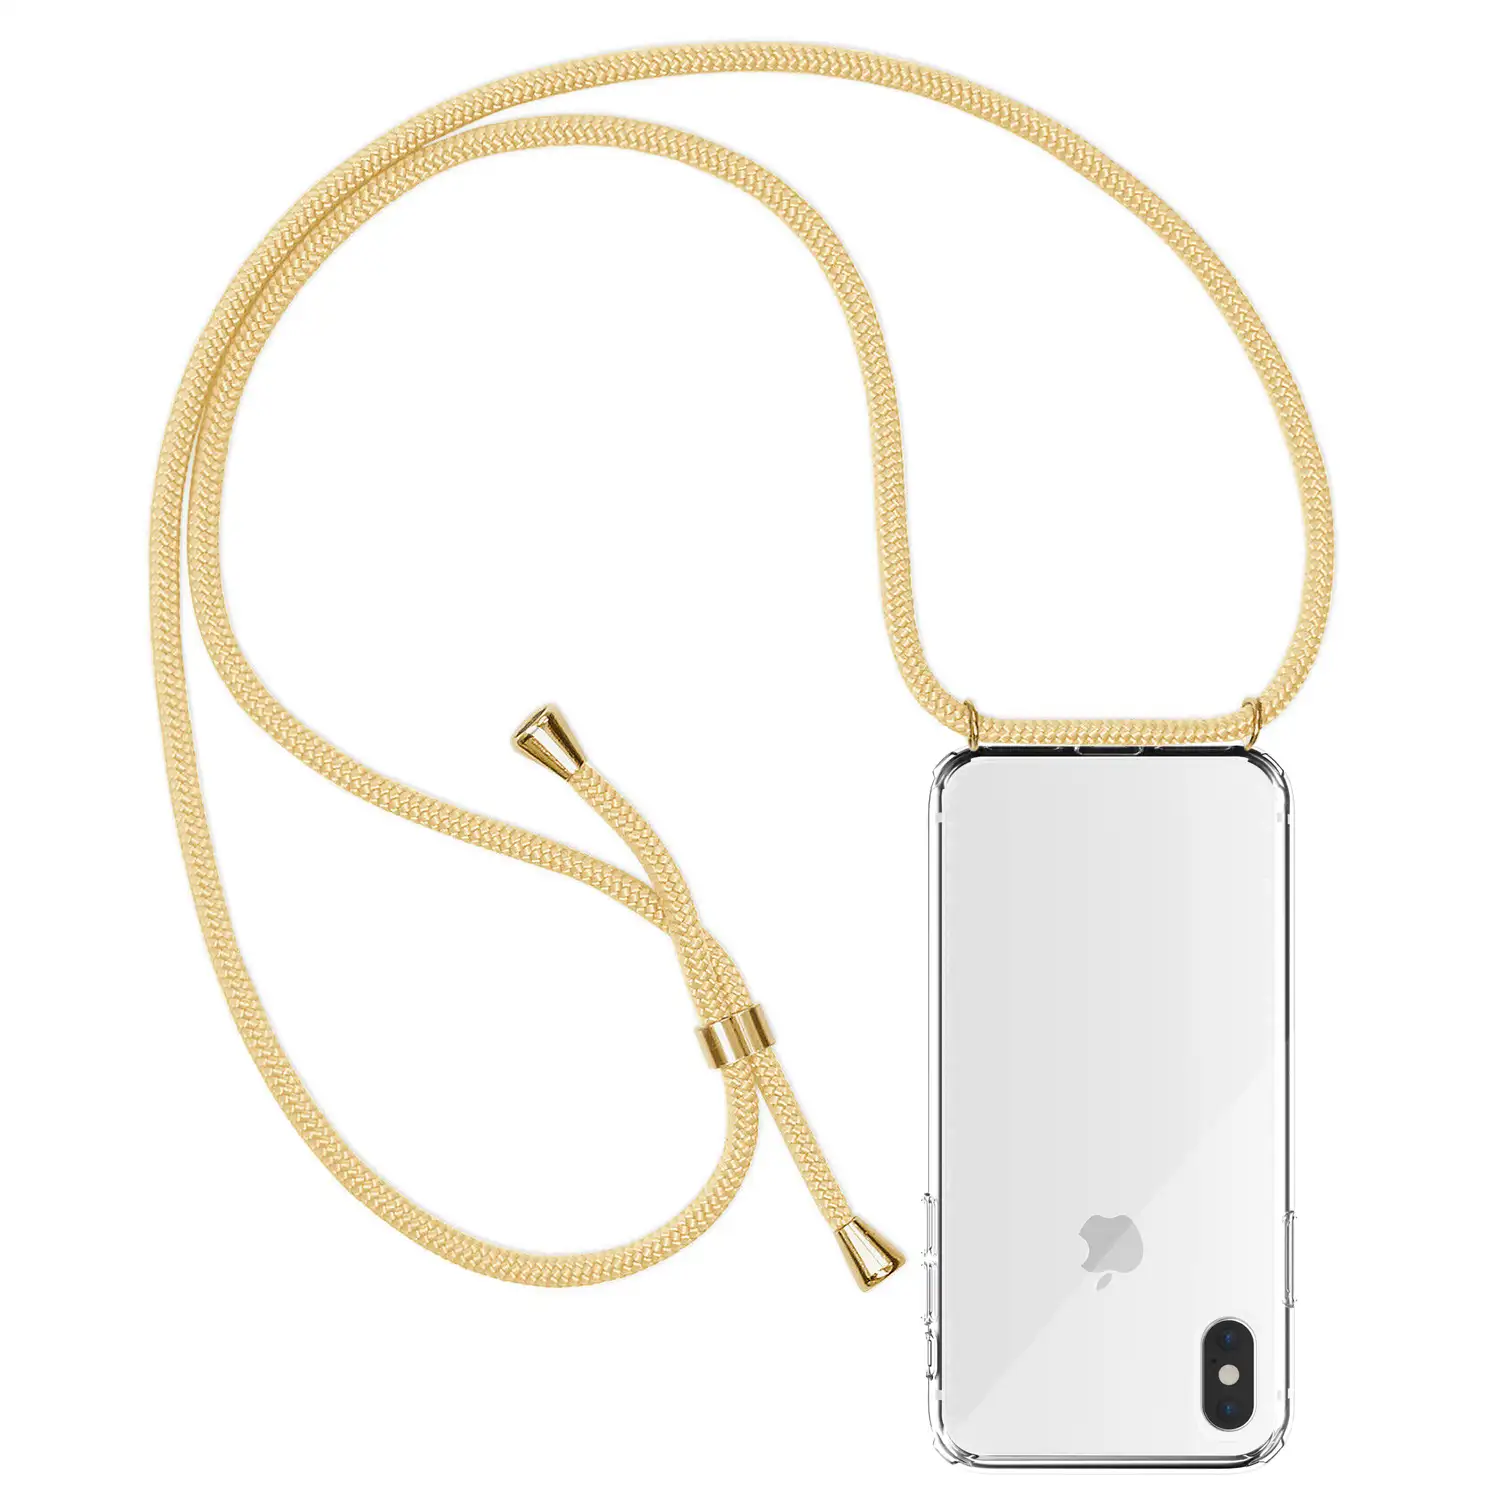 Carcasa transparente iPhone XS Max con colgante de nylon. Accesorio de moda, ajuste perfecto y máxima protección